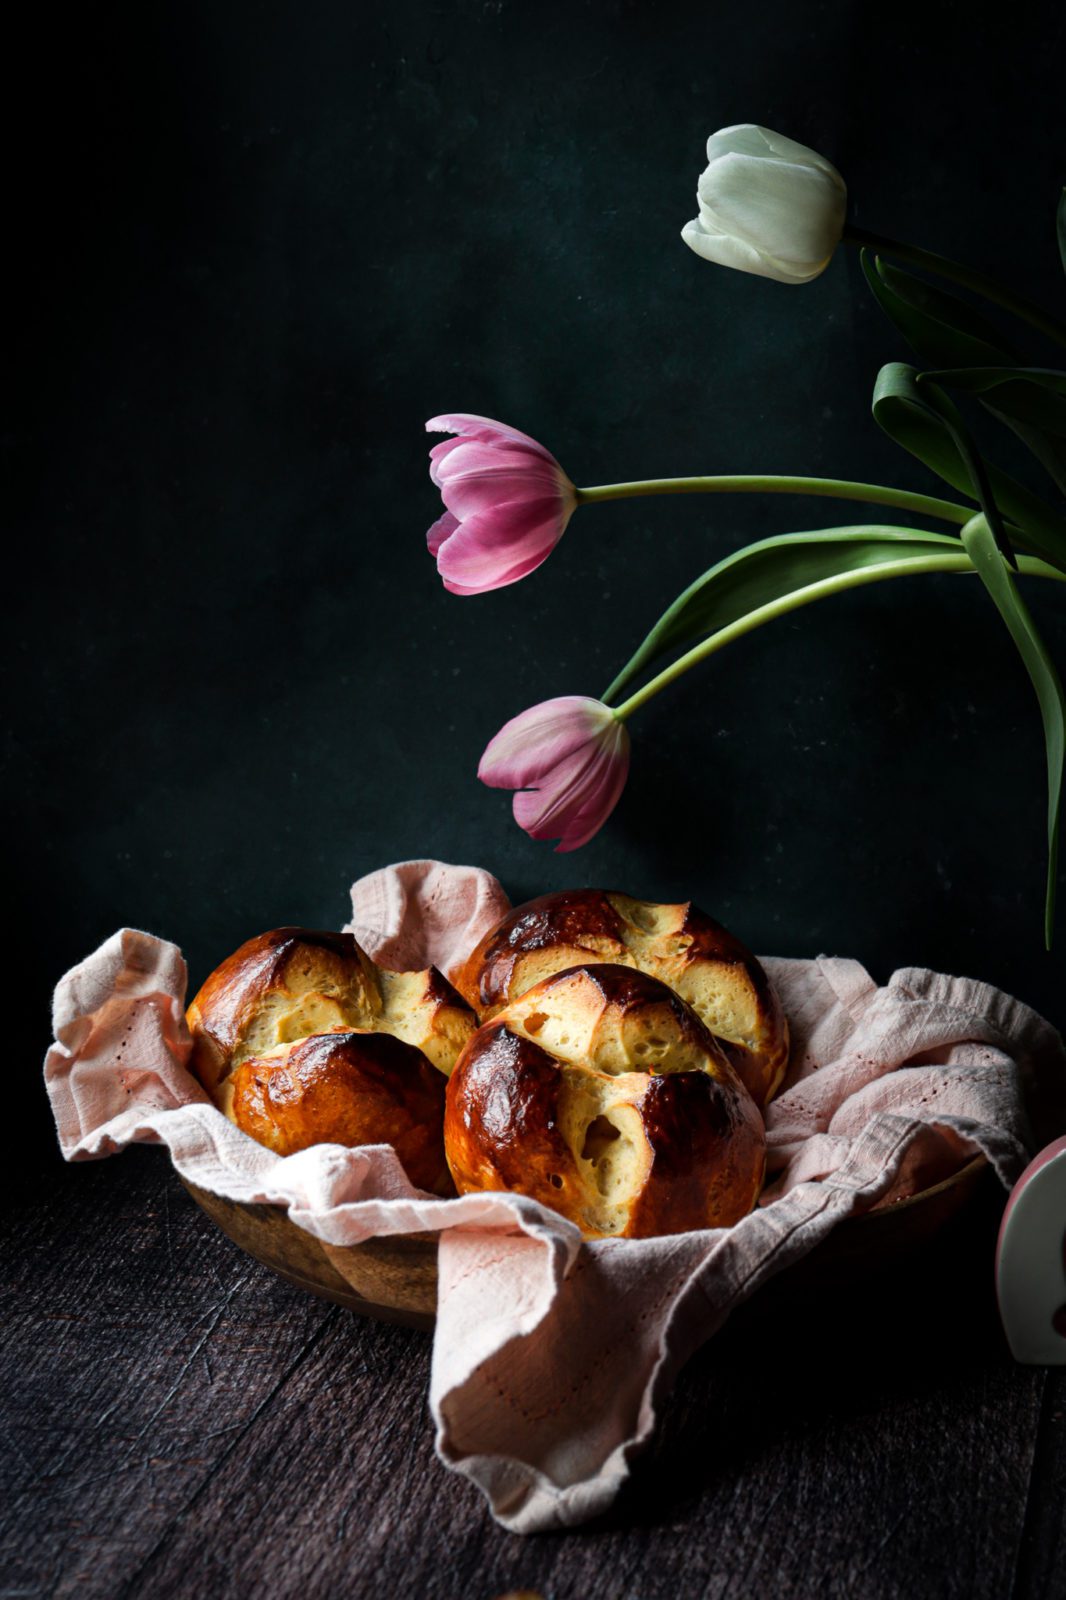 The Pinze – an Austrian Easter milk bread recipe